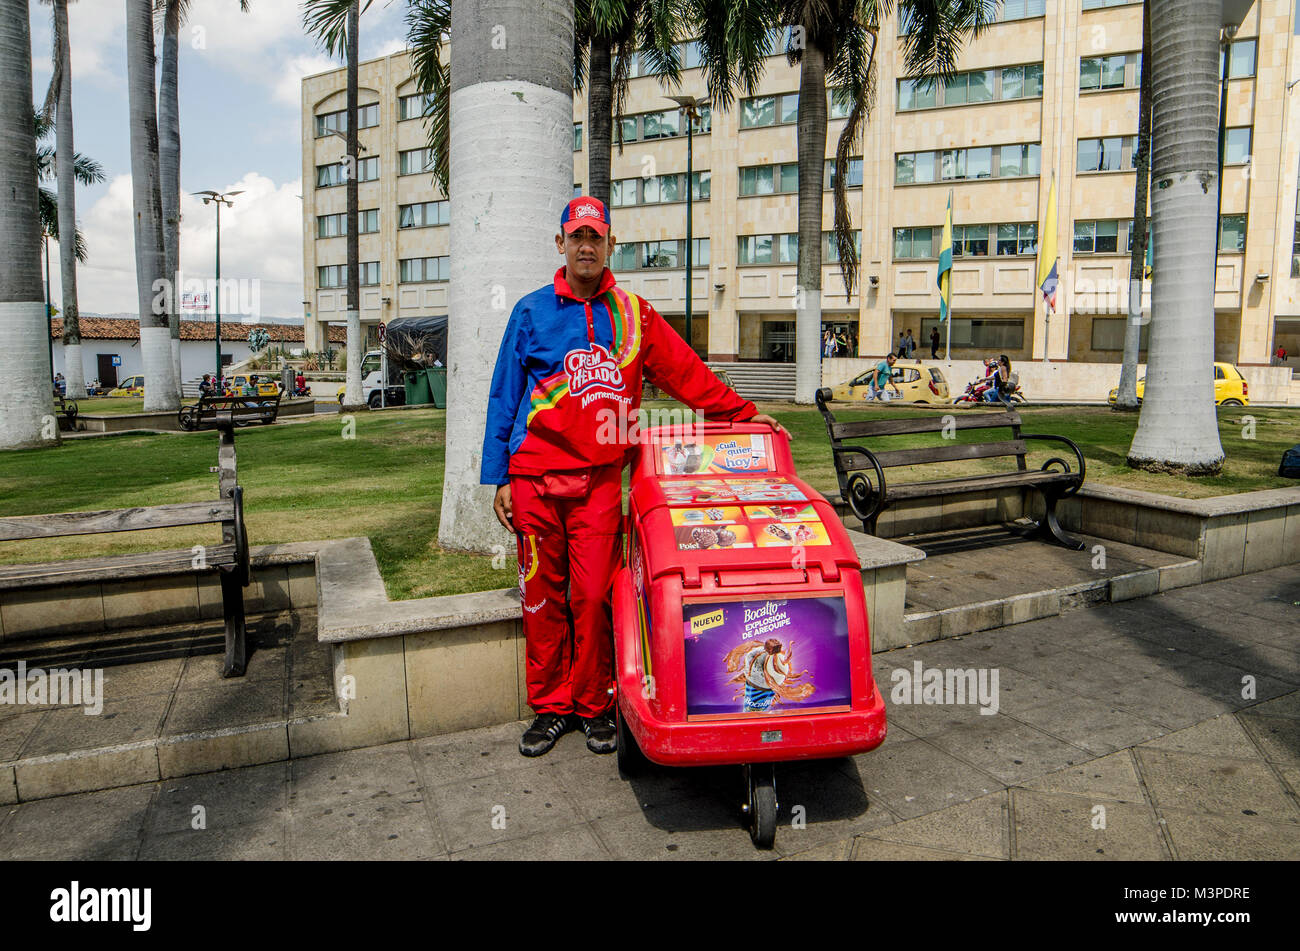 Rafael dal Venezuela sorge accanto al suo carrello, che egli utilizza per la vendita di gelati per le strade di Bucaramanga, Colombia, 8 febbraio 2018. Rafael e sua moglie Carolina è venuto sopra il confine a Cucuta. A causa della situazione di incertezza che hanno deciso di passare a Bucaramanga. Ci hanno dormito nel central park come altri venezuelani. Stai cercando un reddito fisso, Rafael ha trovato un lavoro come un gelato fornitore. Con i soldi si guadagna egli è in grado di permettersi un rifugio per la notte e per inviare il resto per i suoi figli in Venezuela, che vivono con la loro nonna. Il giovane vuole stabilirsi in il colombiano Foto Stock